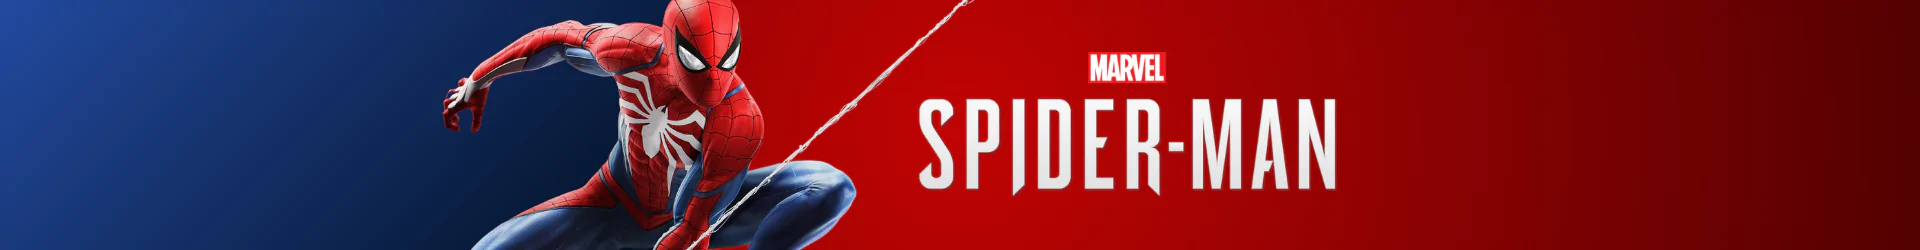 Spider-Man stationeries  banner